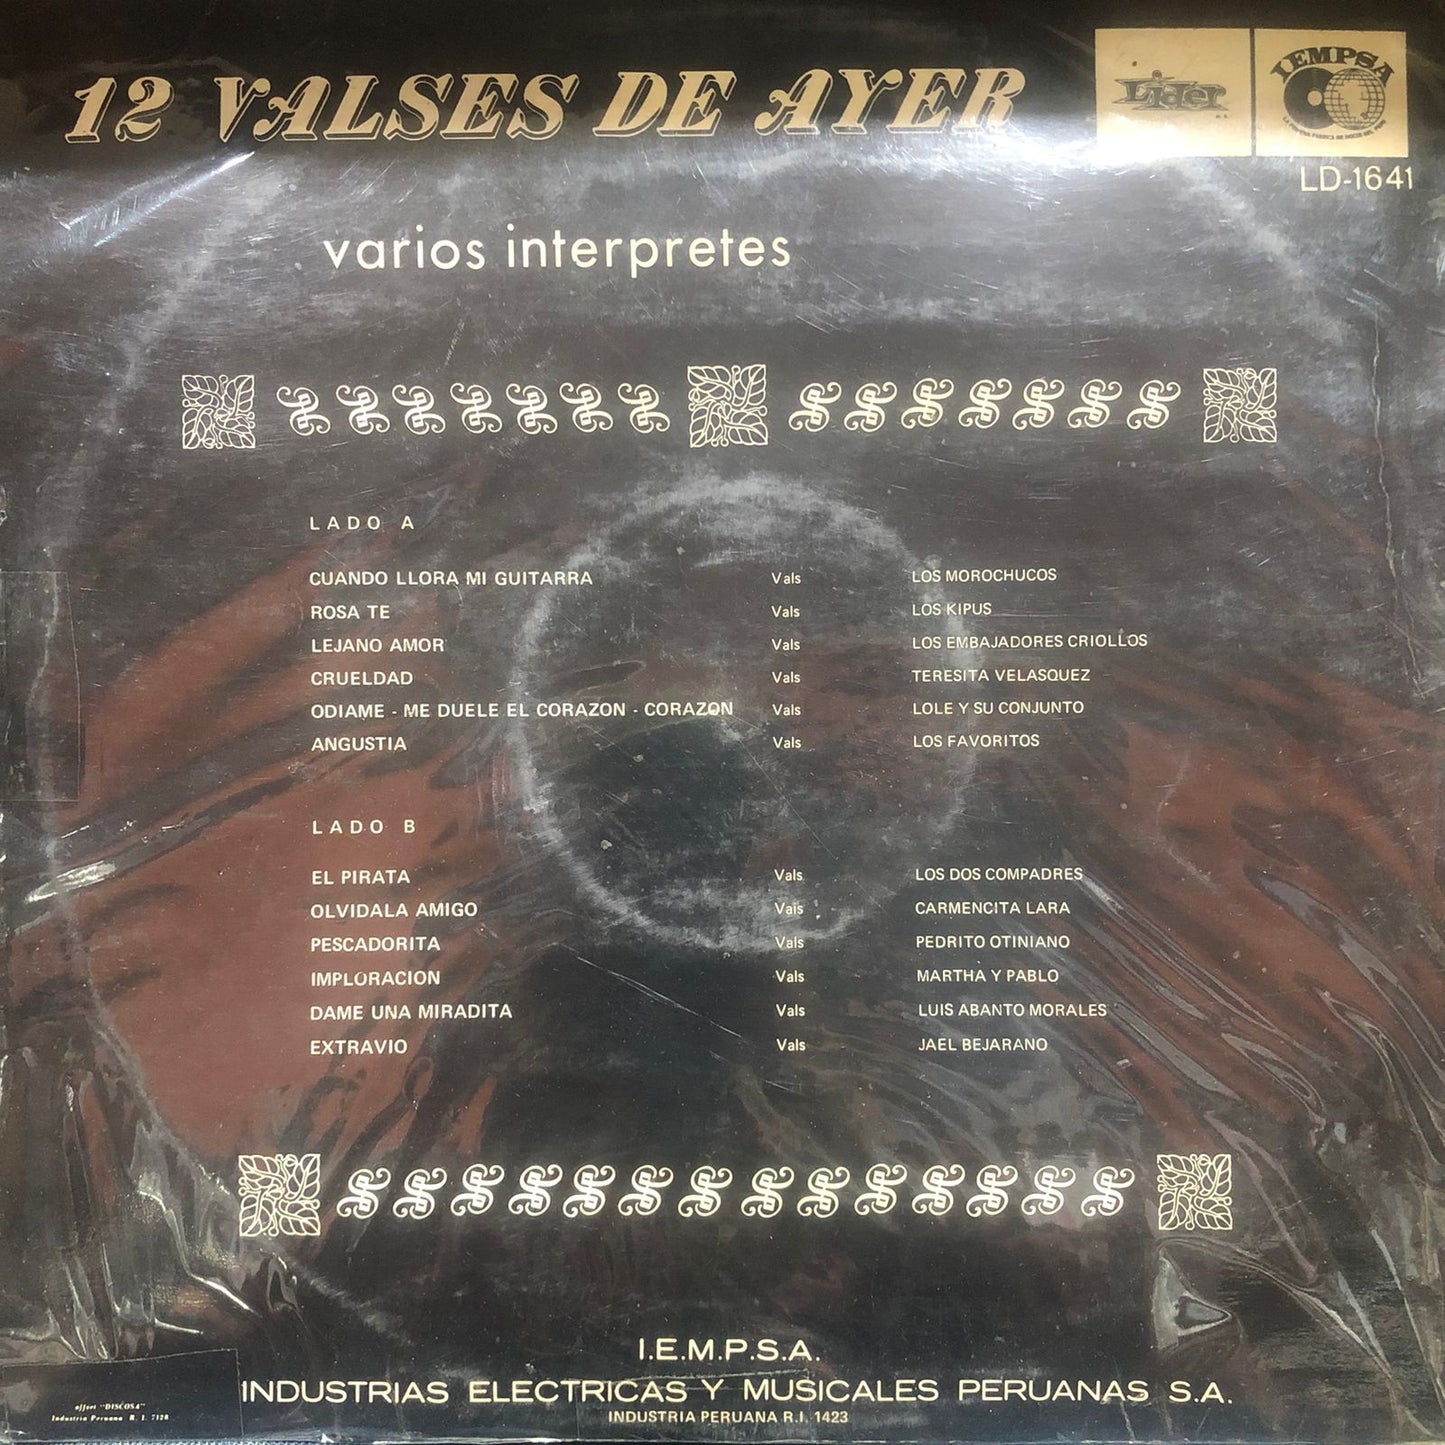 12 VALSES DE AYER - VARIOS INTERPRETES LP